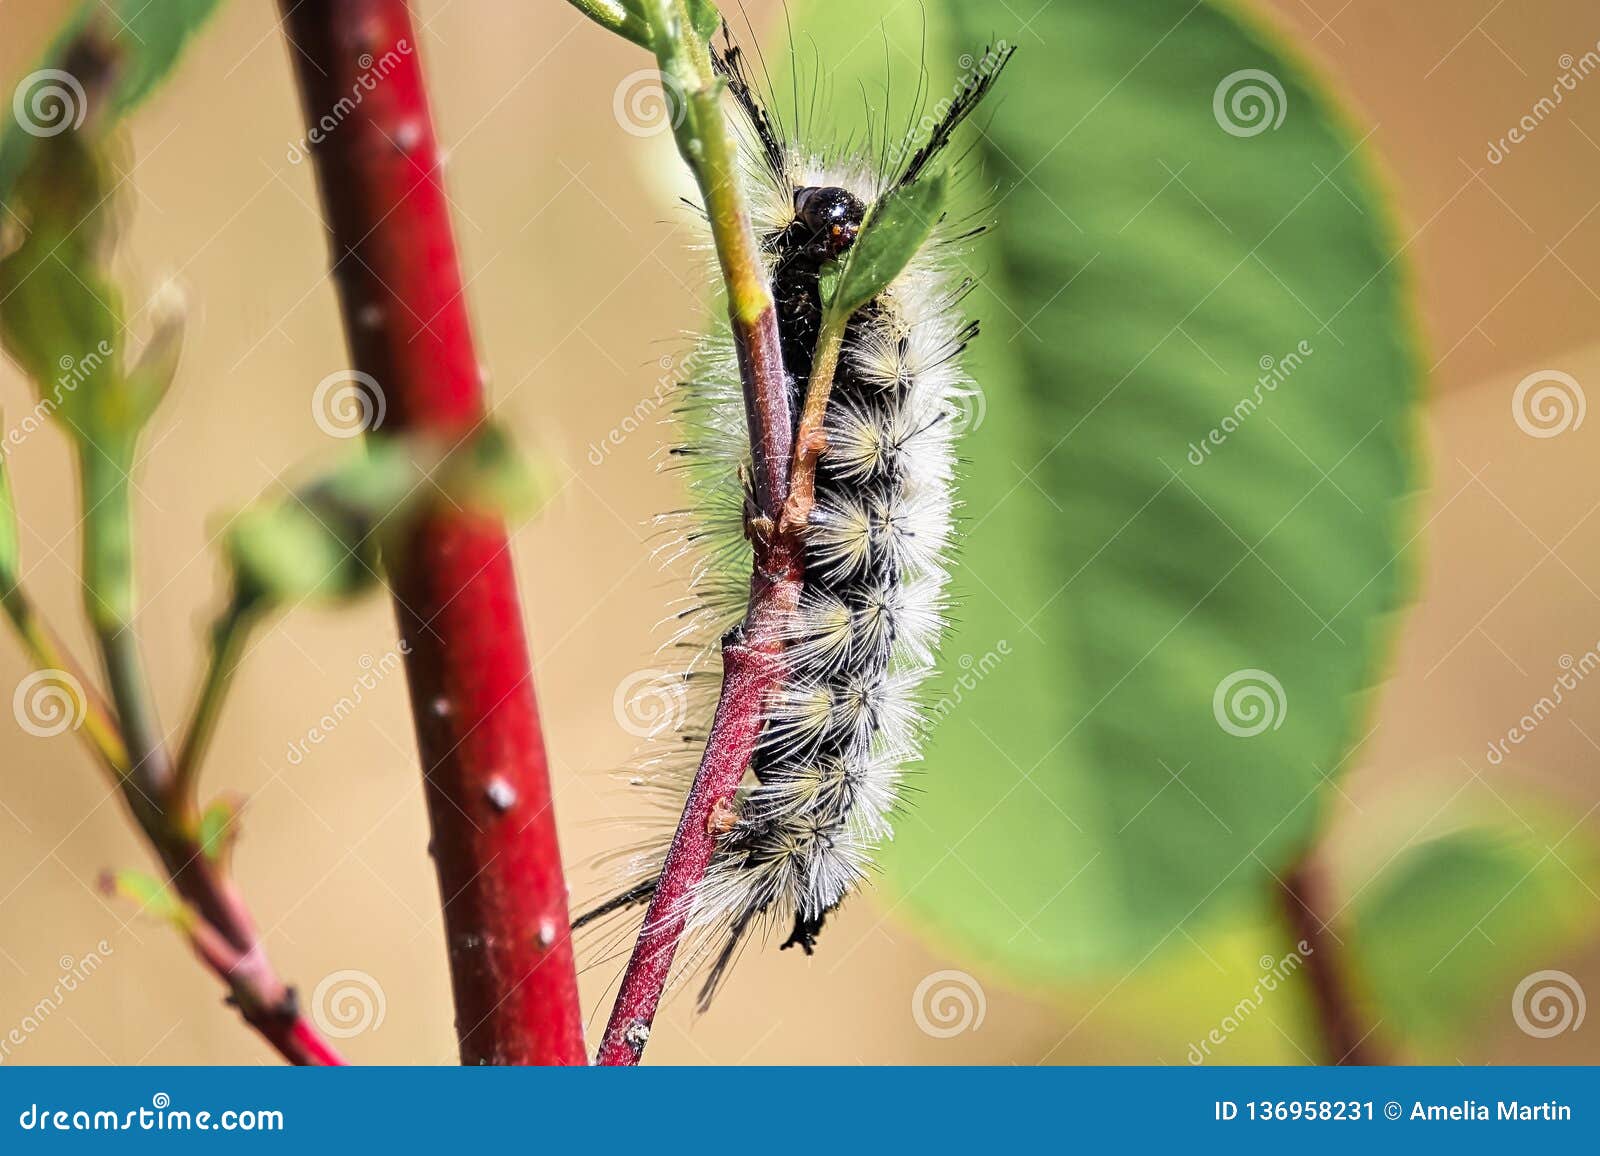 Closeup With Tussock Moth Larvae Caterpillar Stock Photo Cartoondealer Com